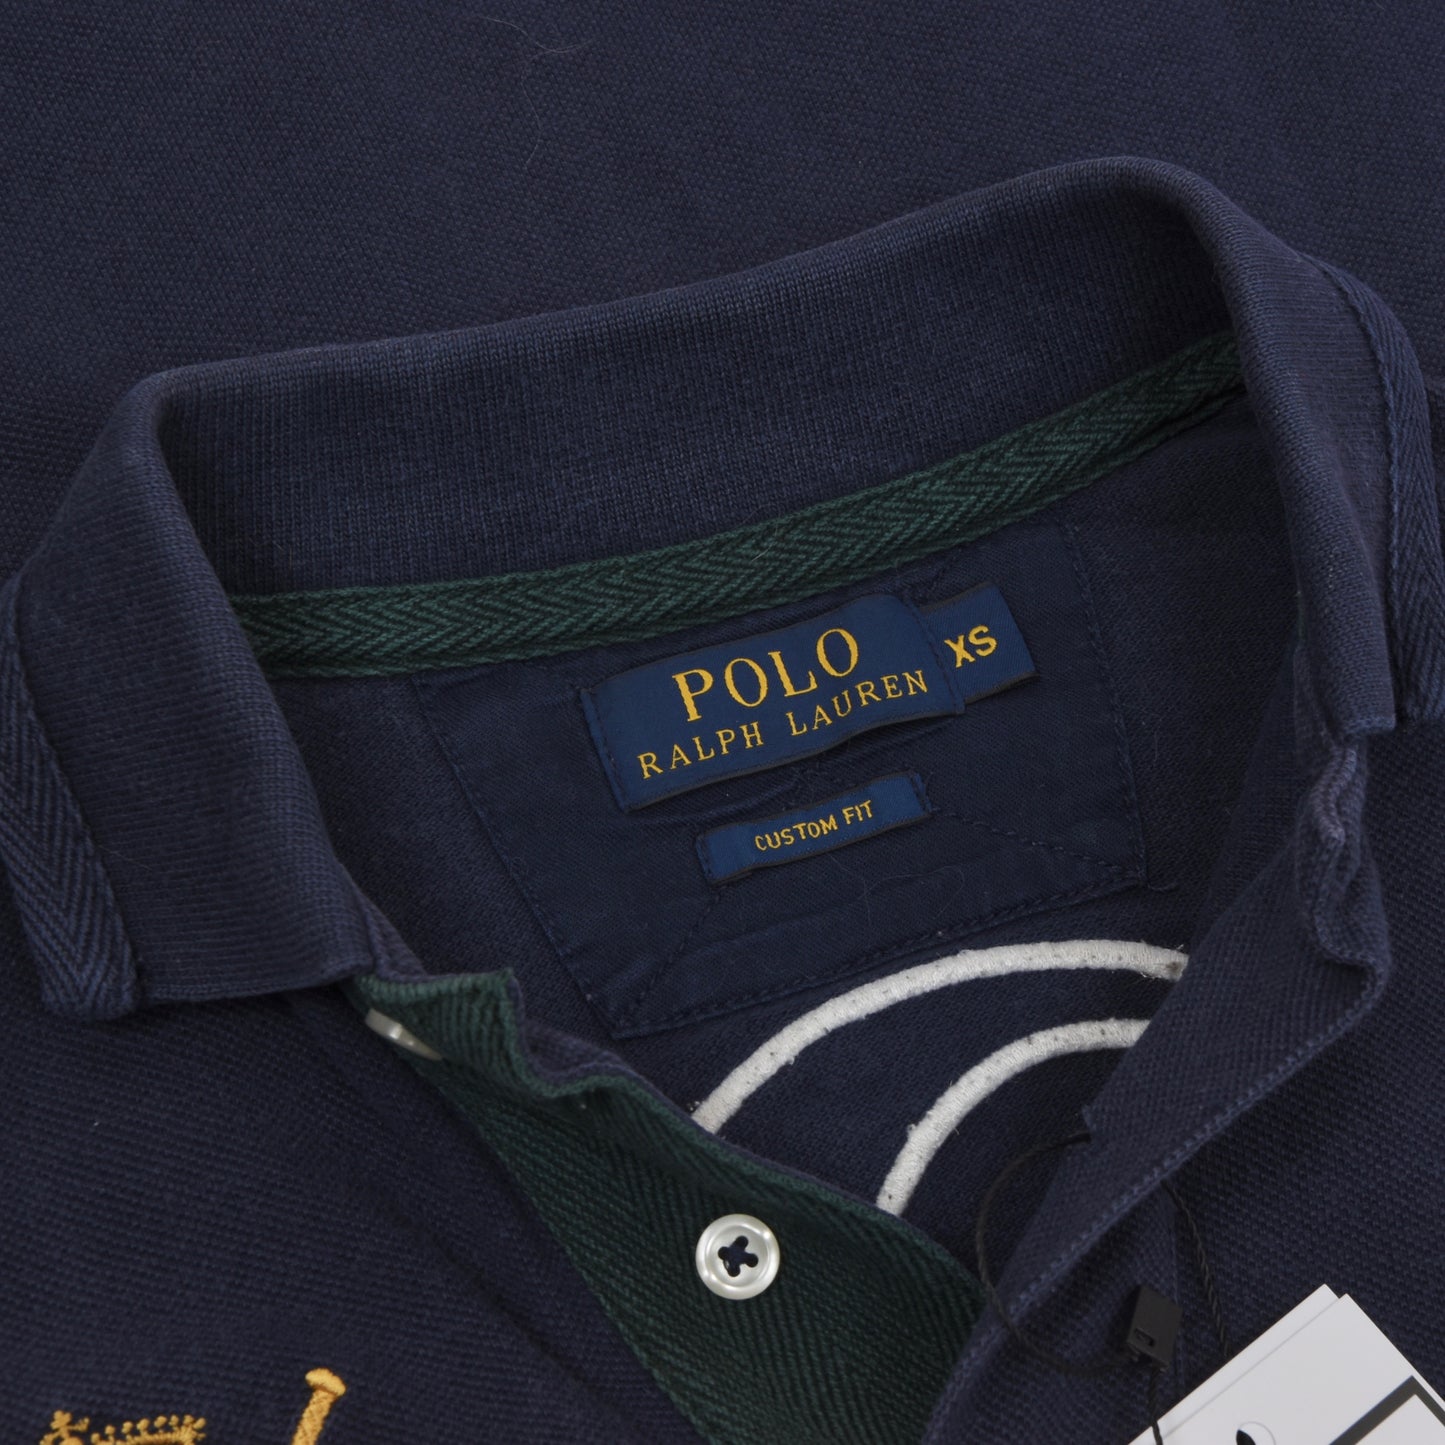 Polo Ralph Lauren Custom Fit Shirt Size XS - Navy